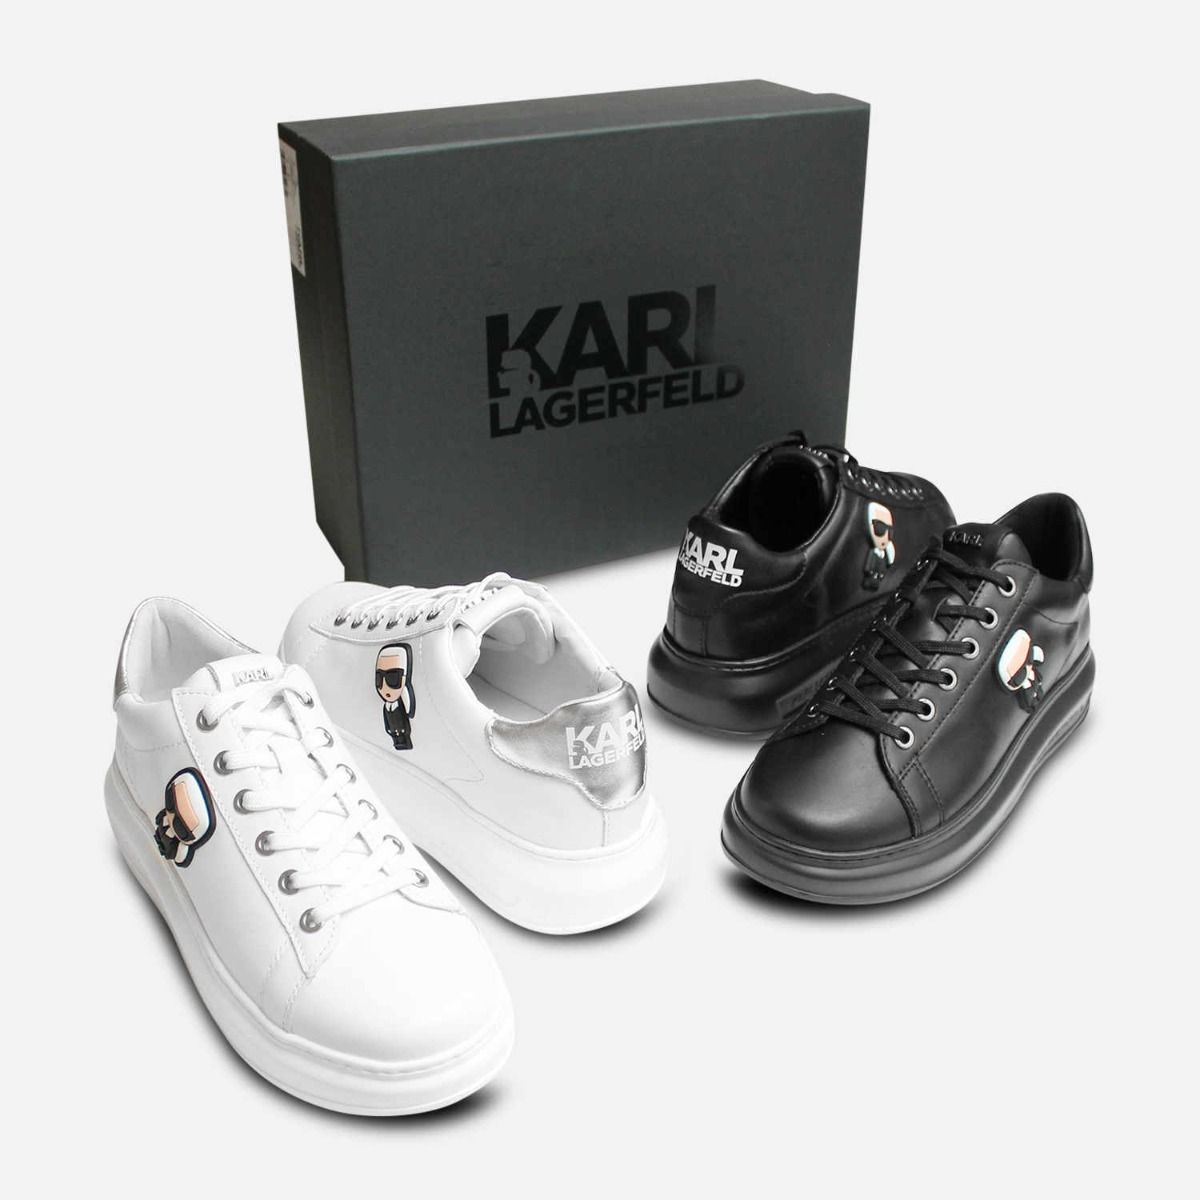 karl lagerfeld women's sneakers